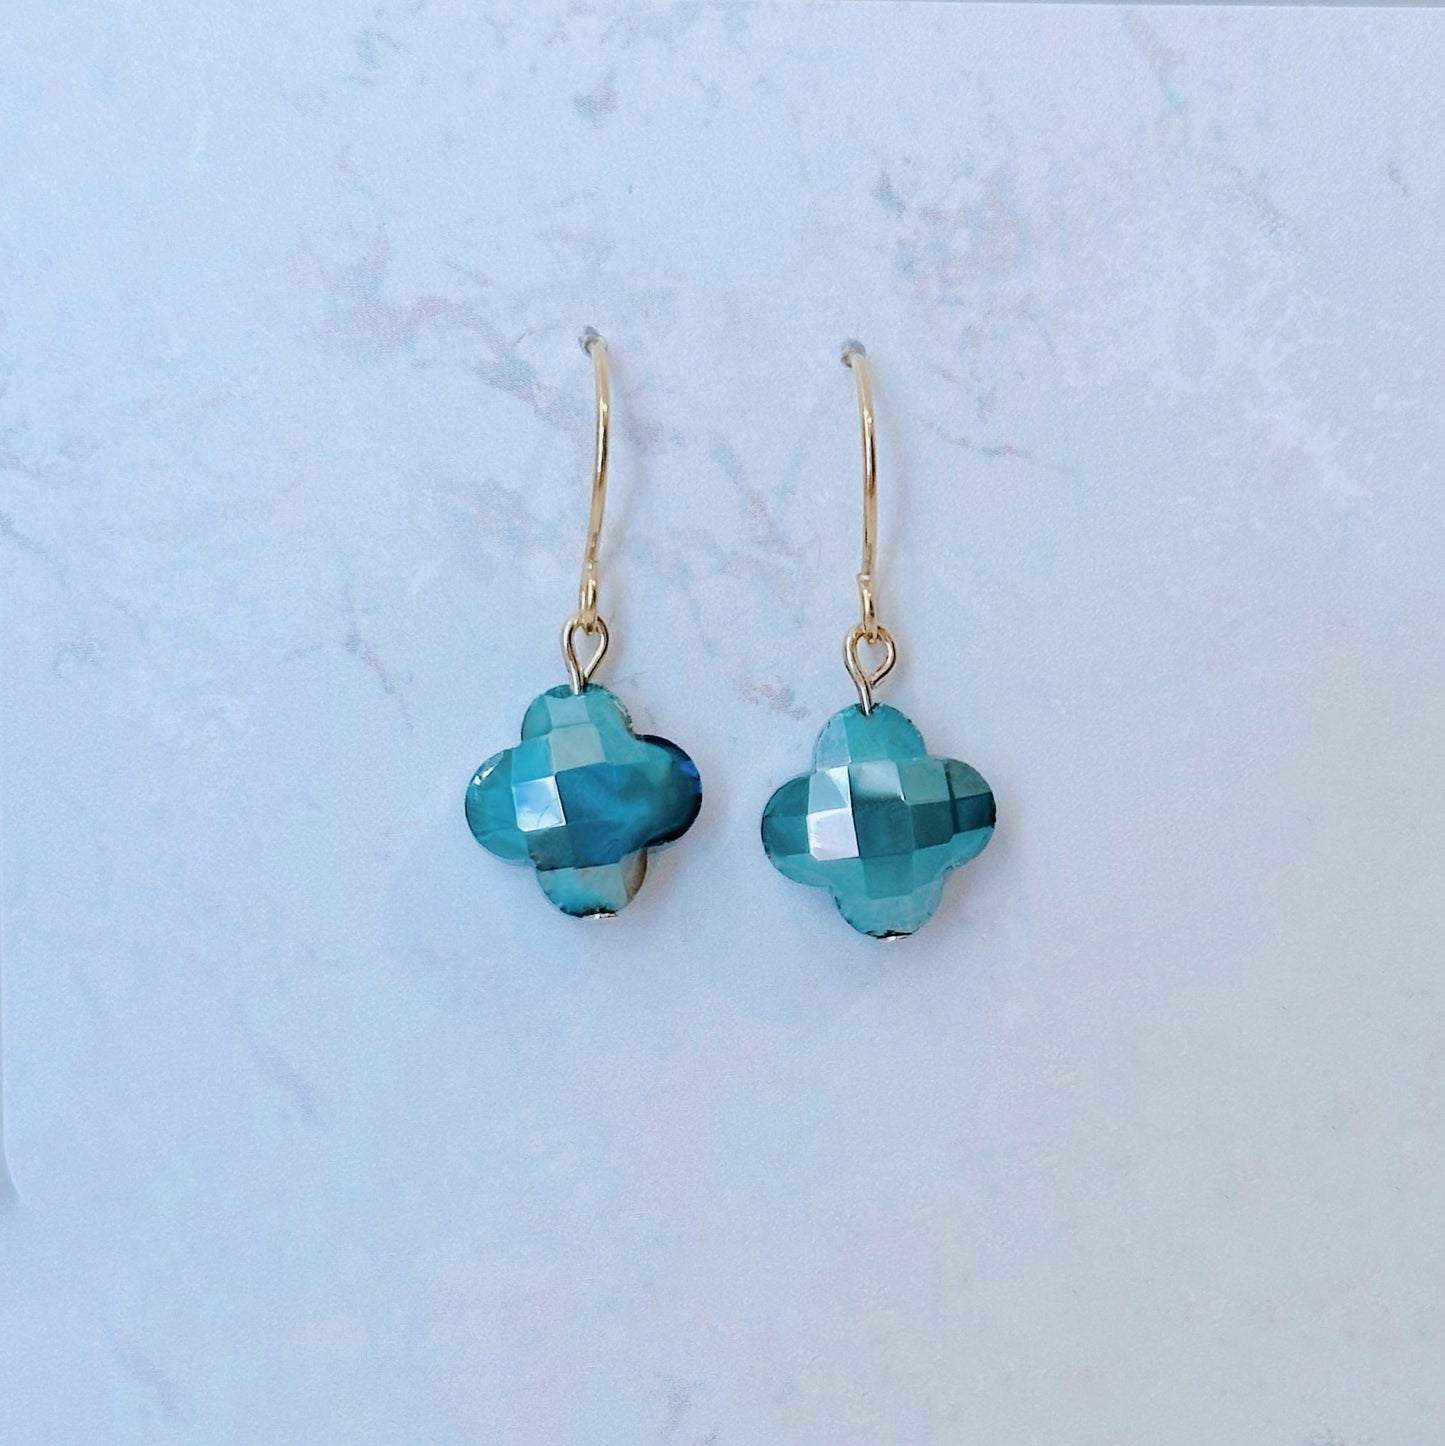 Turquoise glass clover pendant dangle earrings